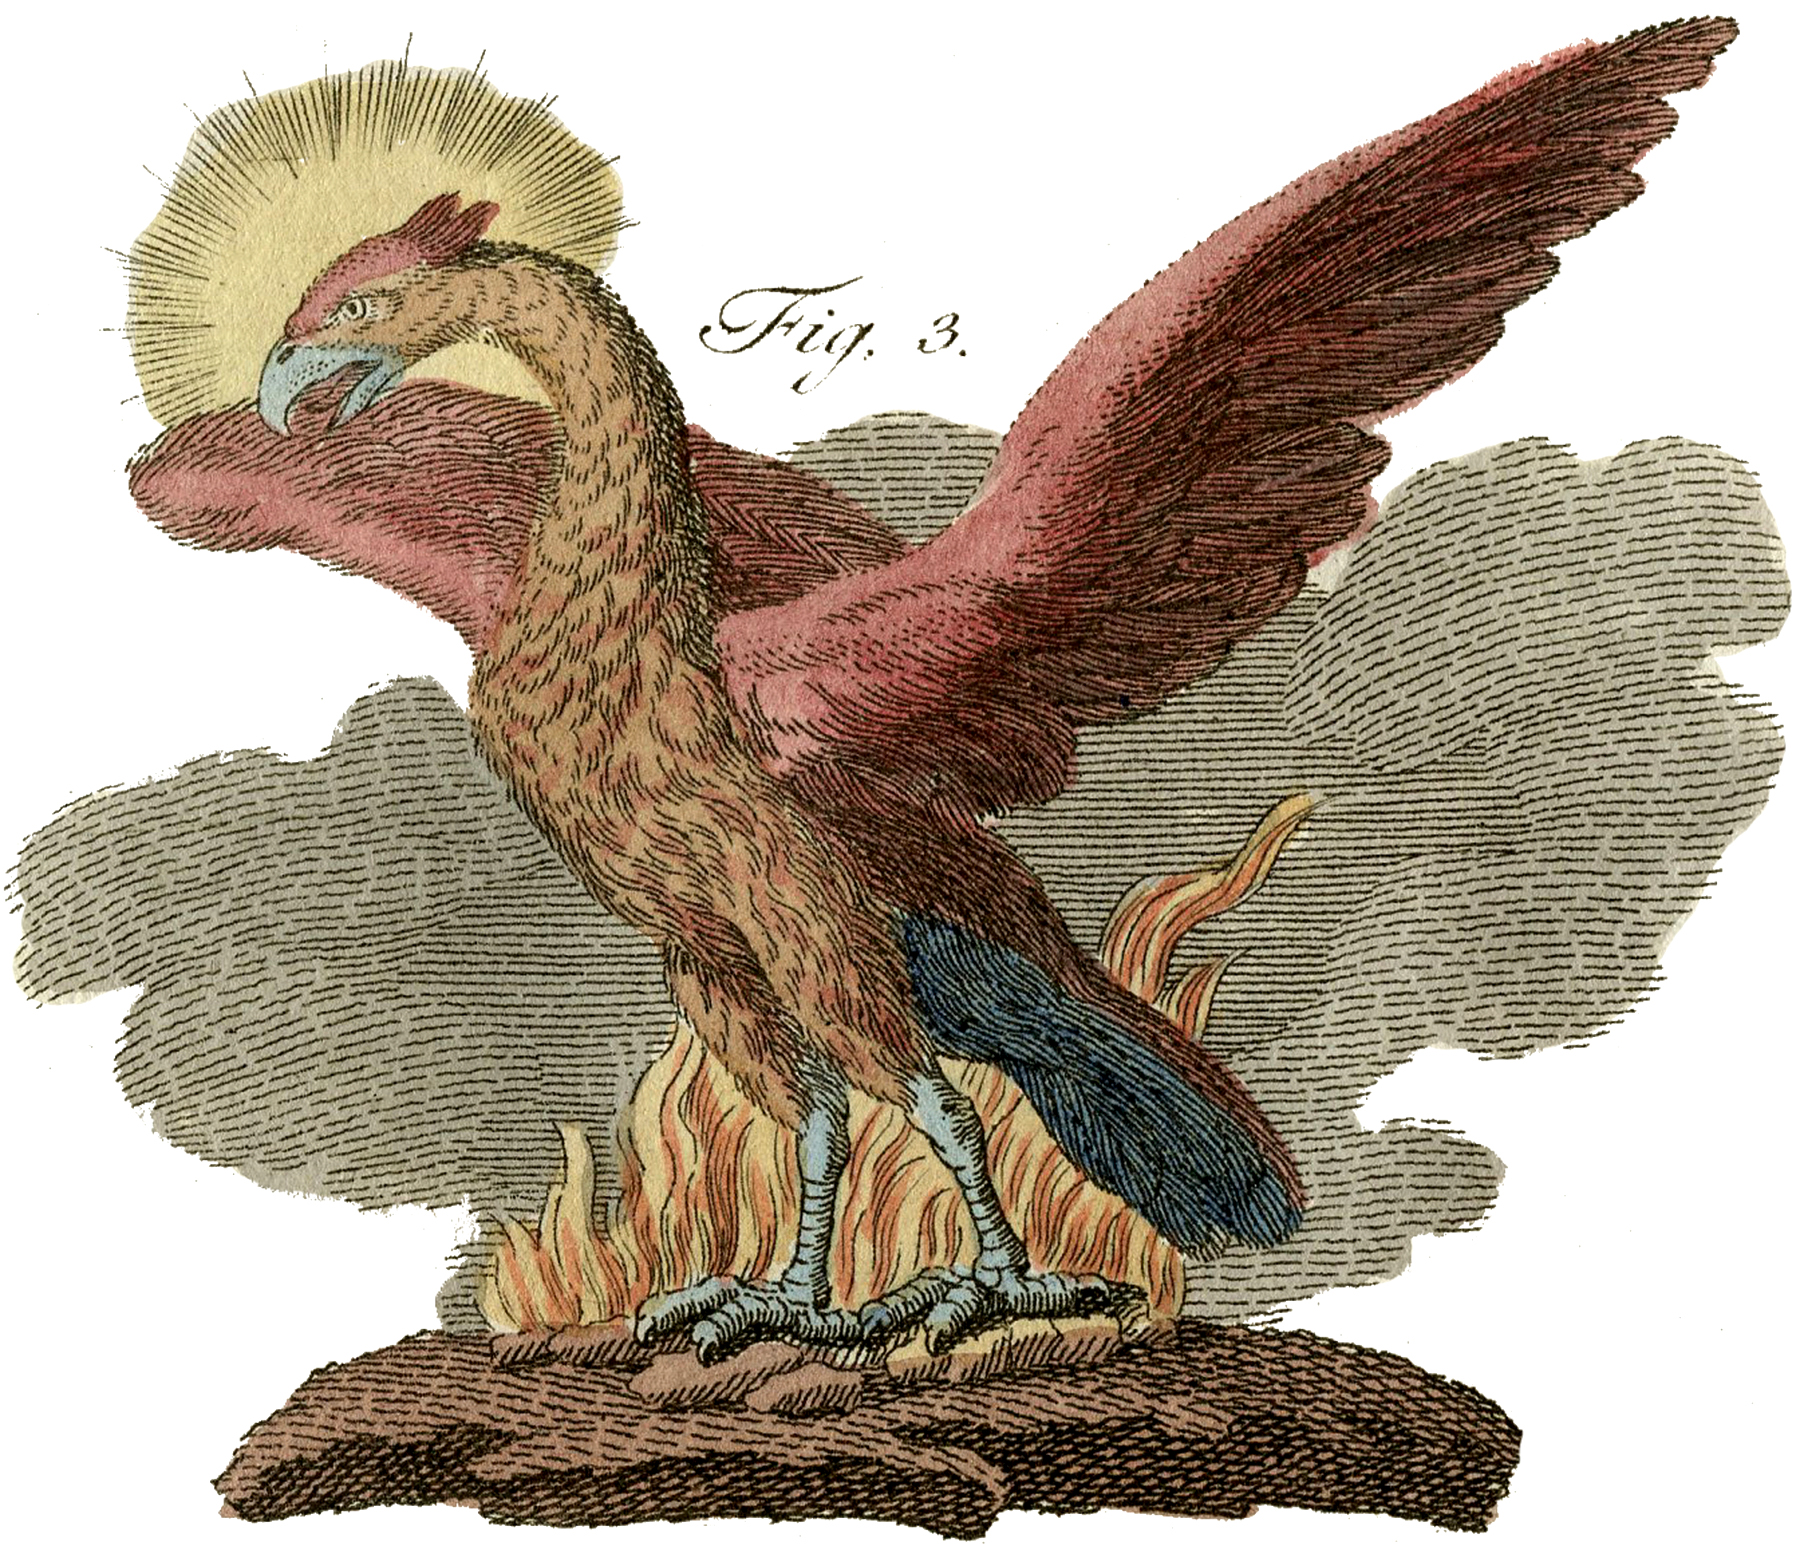 phoenix clipart public domain